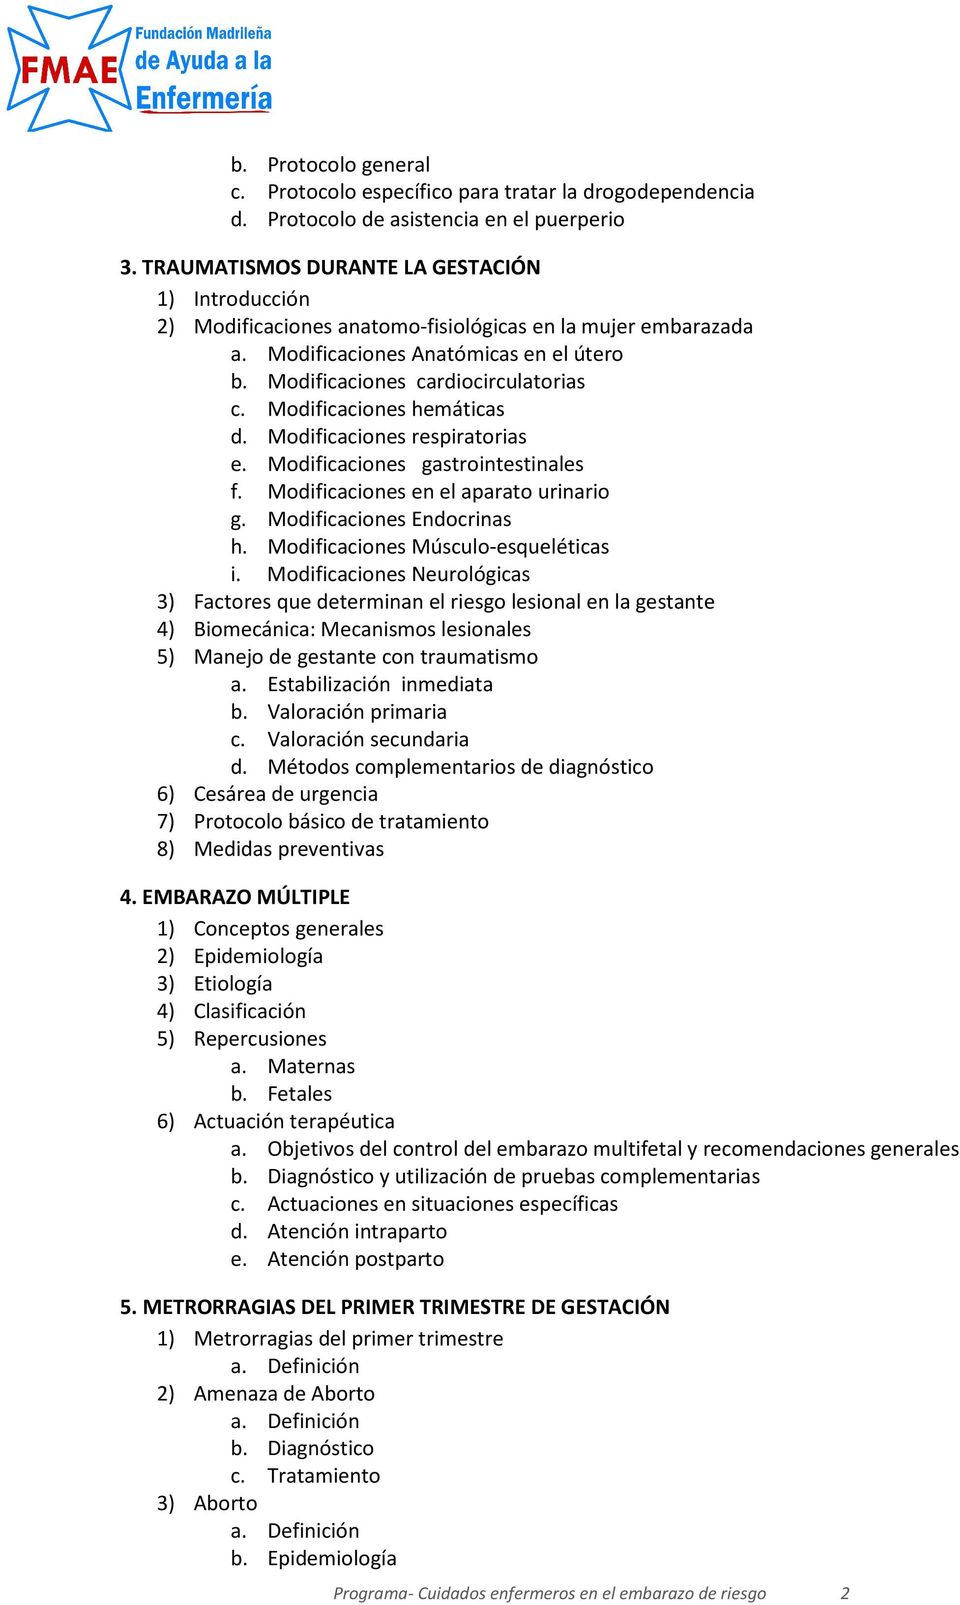 Modificaciones hemáticas d. Modificaciones respiratorias e. Modificaciones gastrointestinales f. Modificaciones en el aparato urinario g. Modificaciones Endocrinas h.